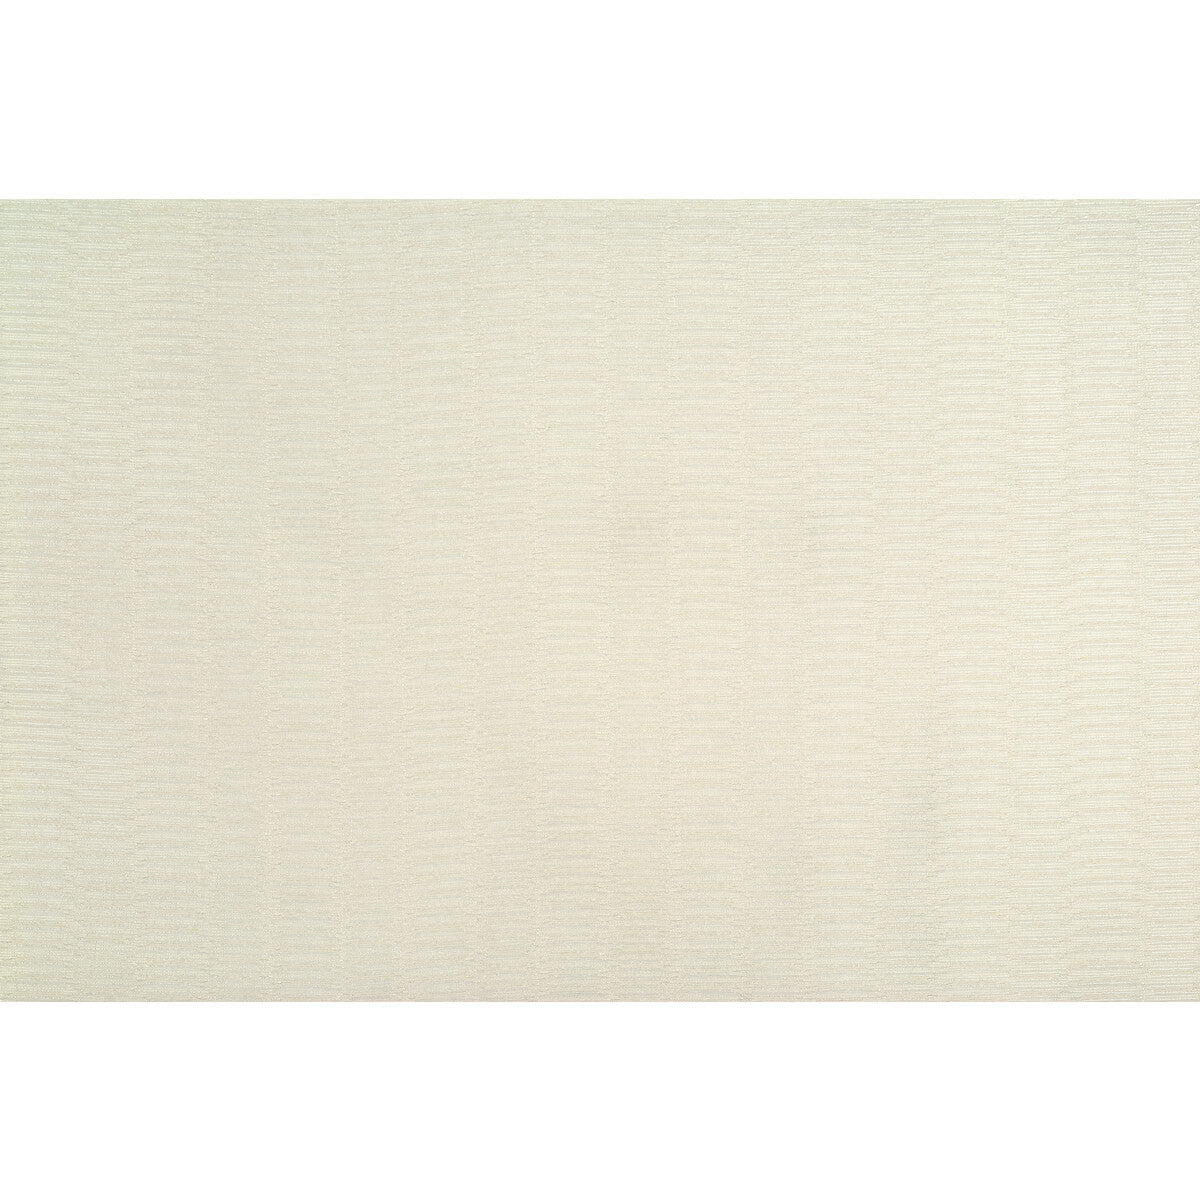 Kravet Basics fabric in 4292-1 color - pattern 4292.1.0 - by Kravet Basics